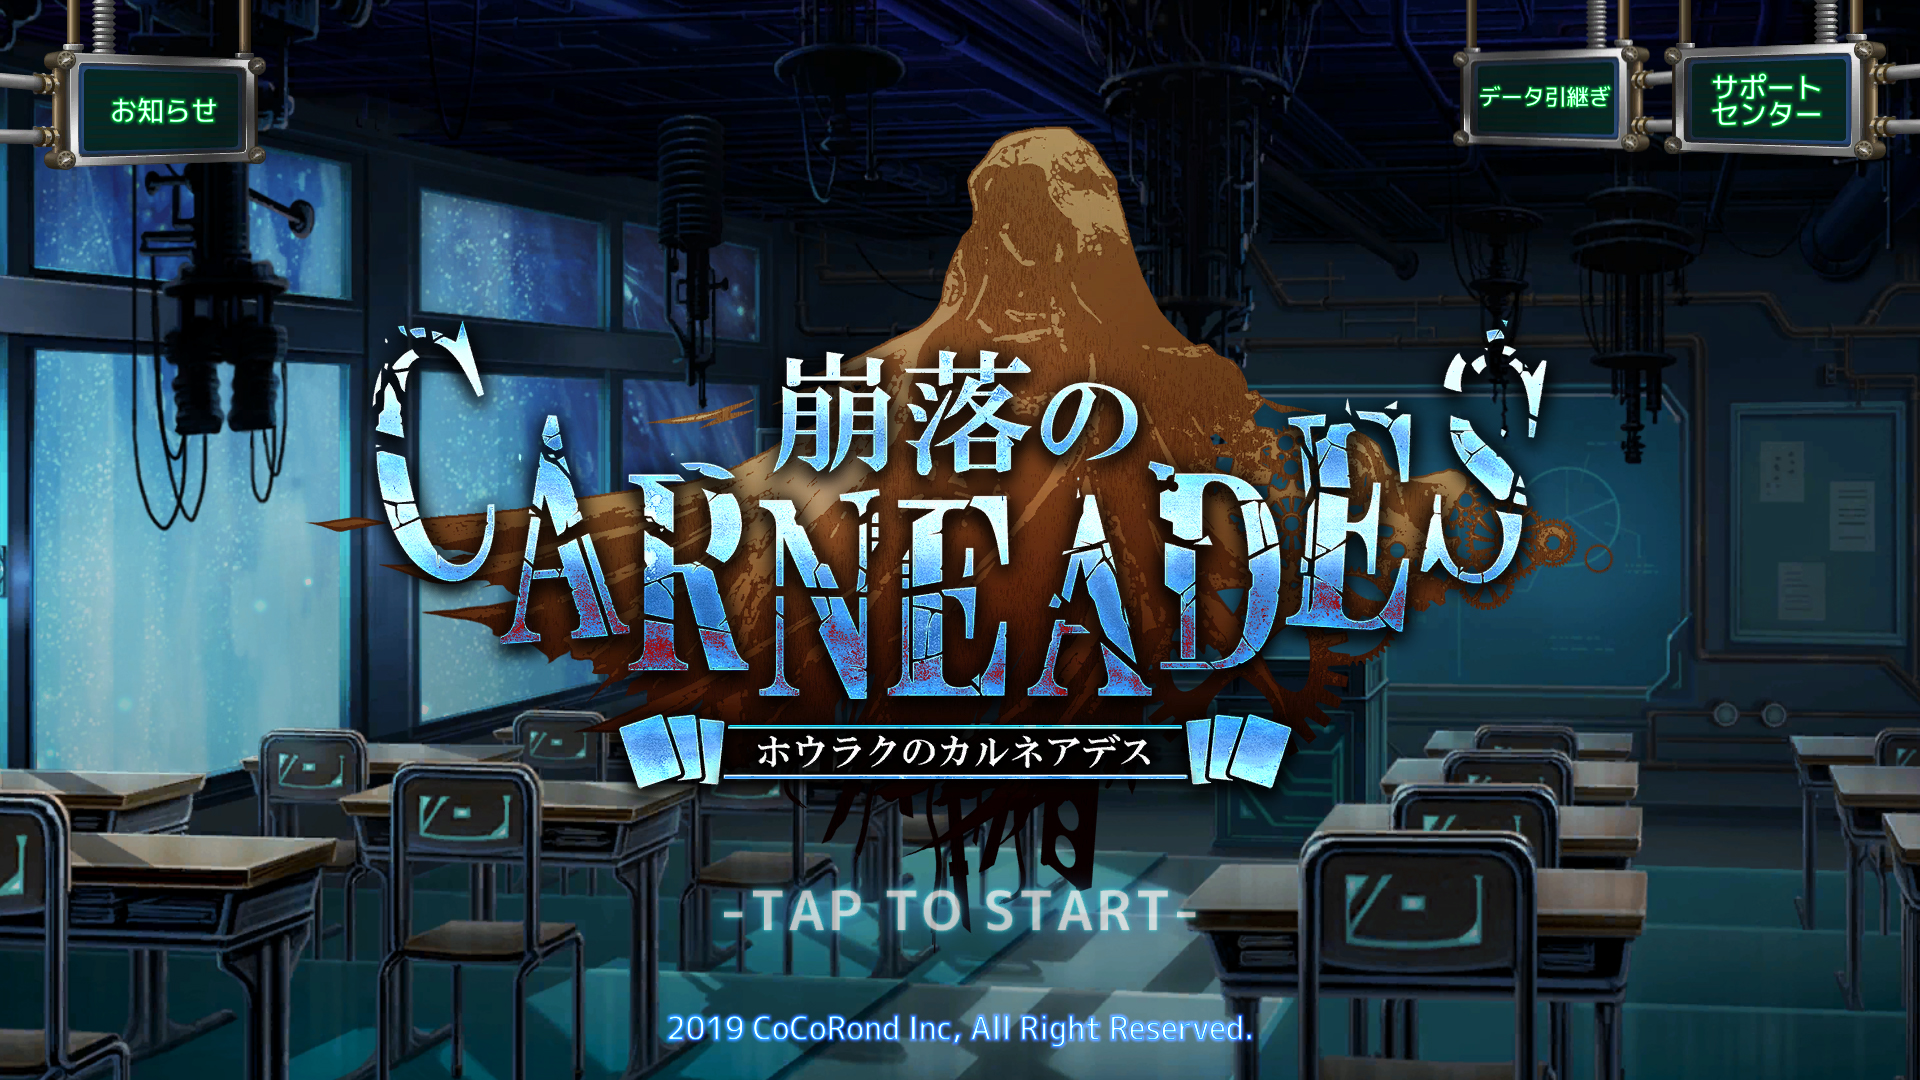 Screenshot 1 of Houraku និង Carneades 1.0.16